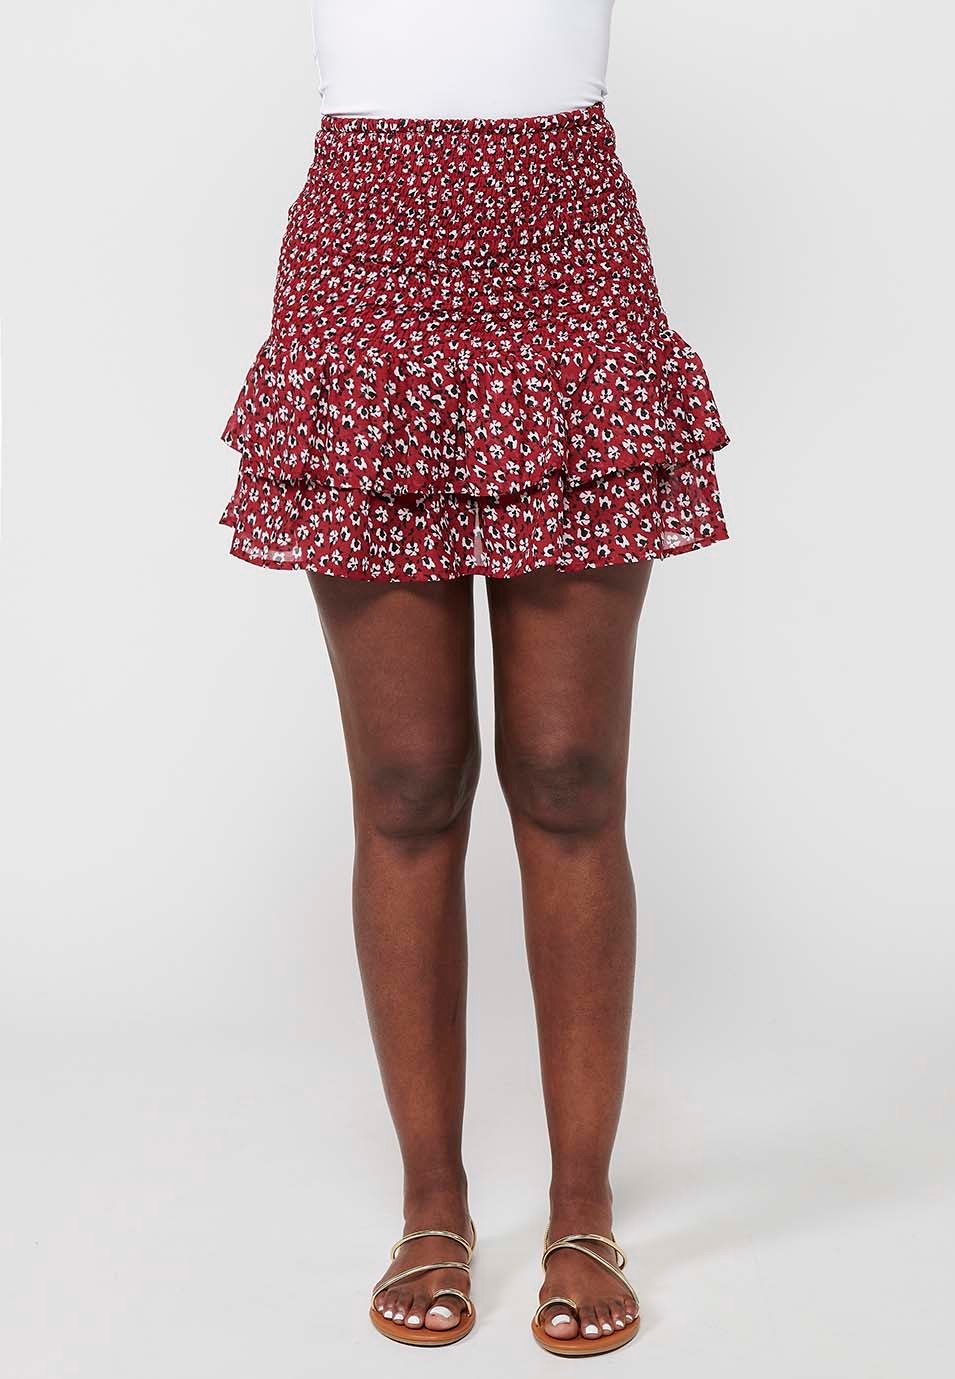 Jupe courte à taille caoutchoutée, imprimé floral rouge pour femme